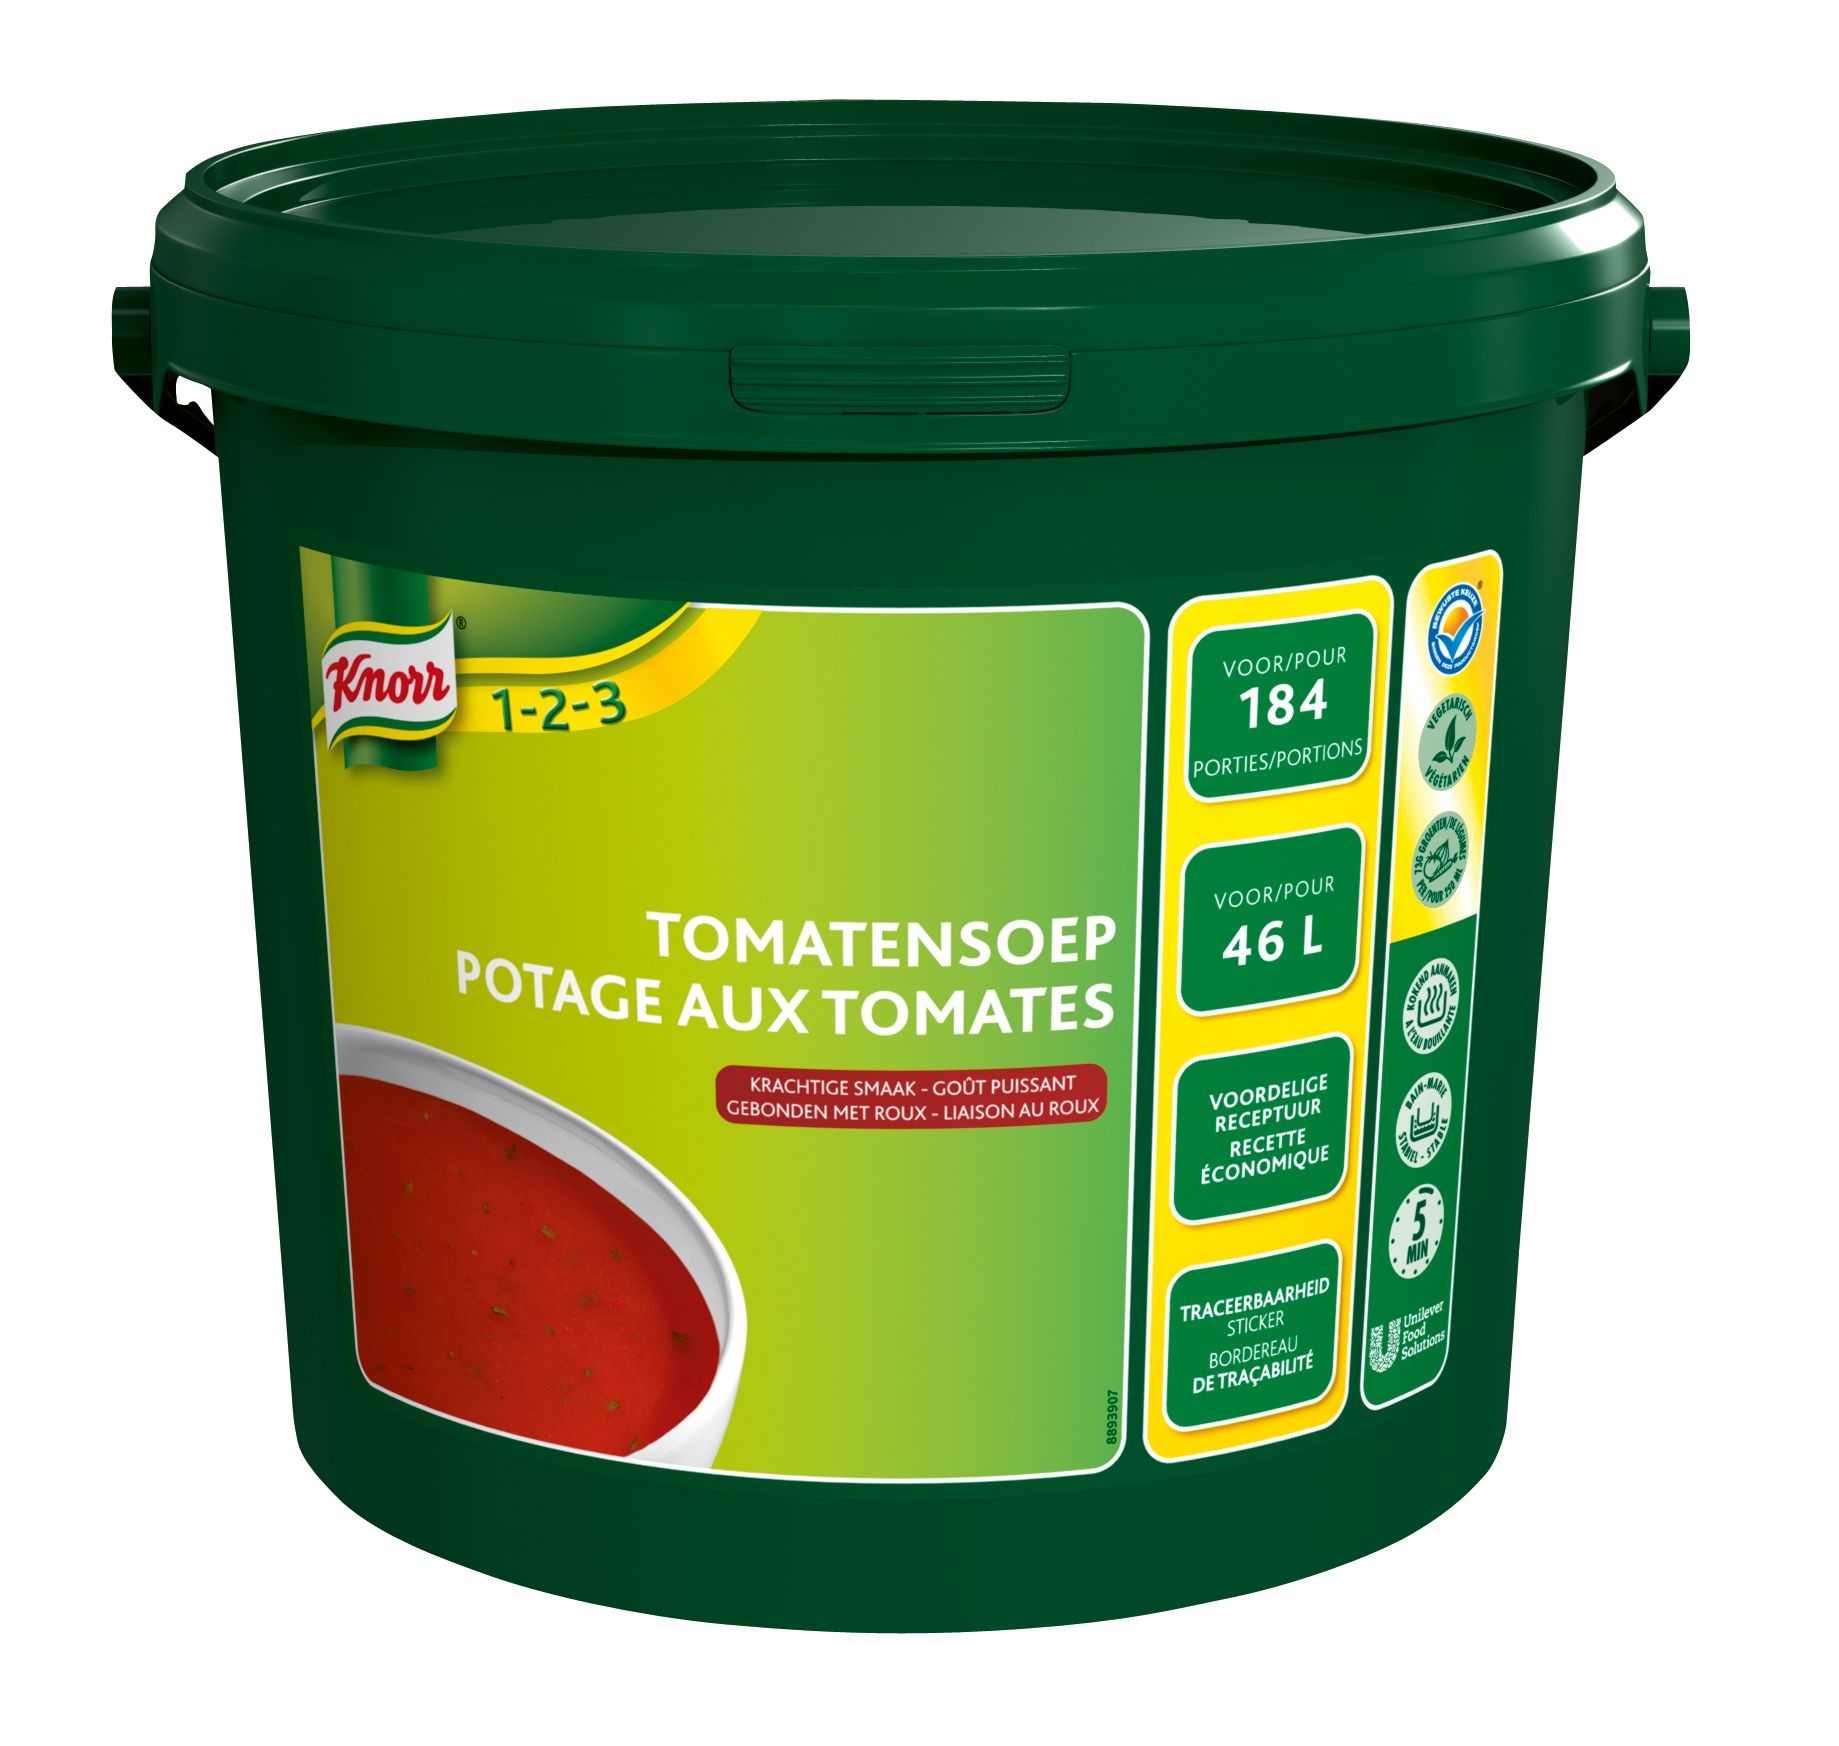 Knorr potage aux tomates 10kg poudre